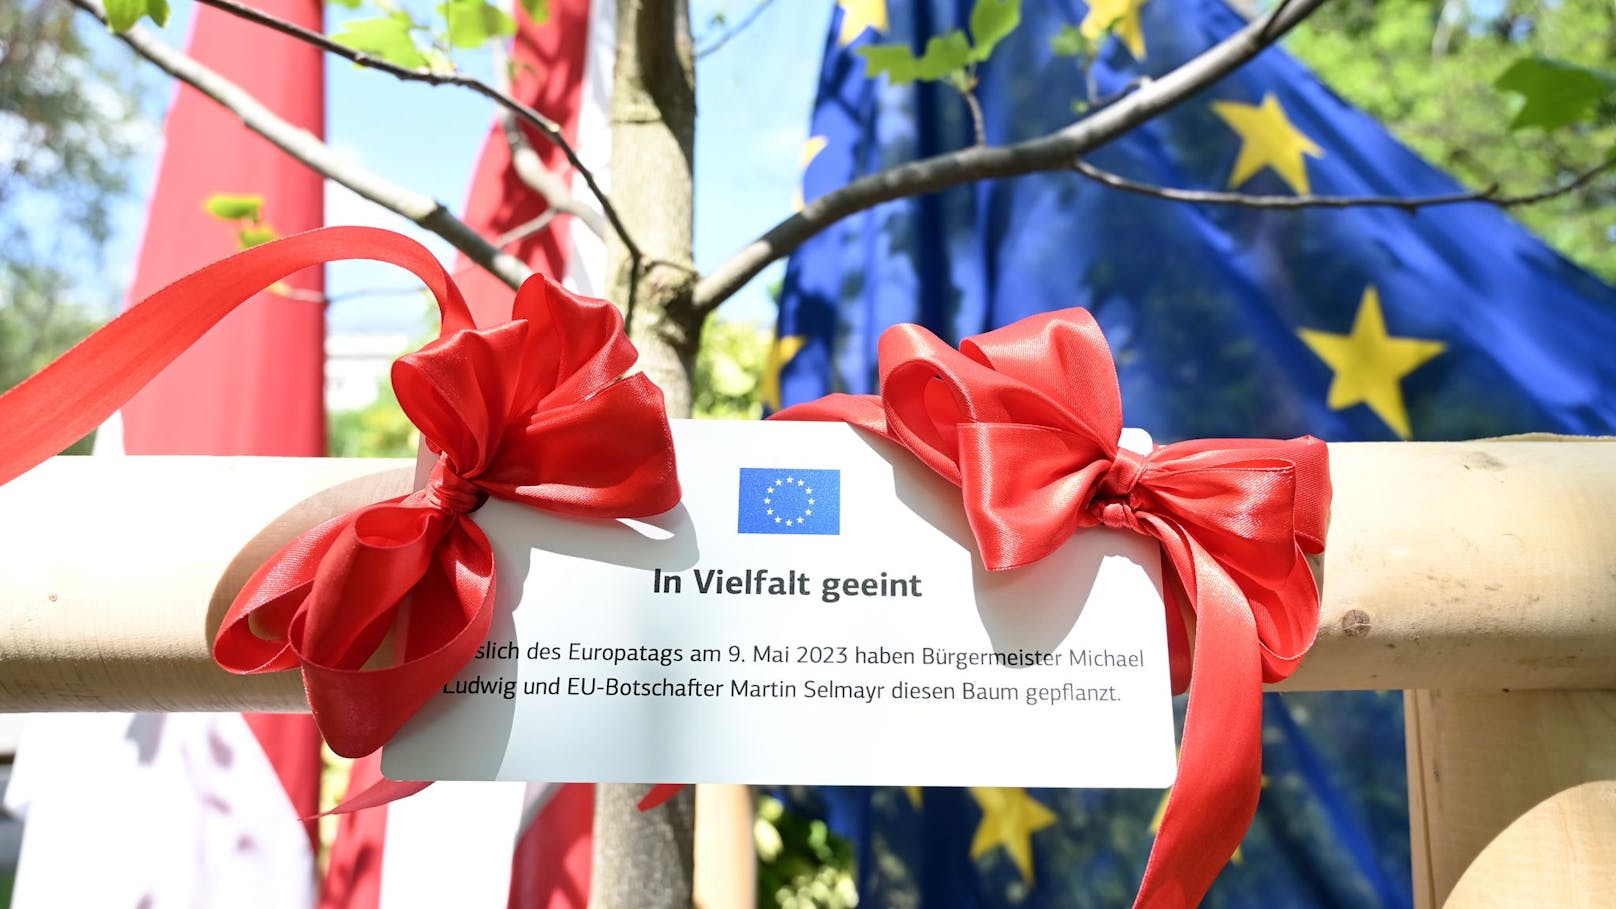 Europatag am 9. Mai: Symbolische Baumpflanzung im Rathauspark